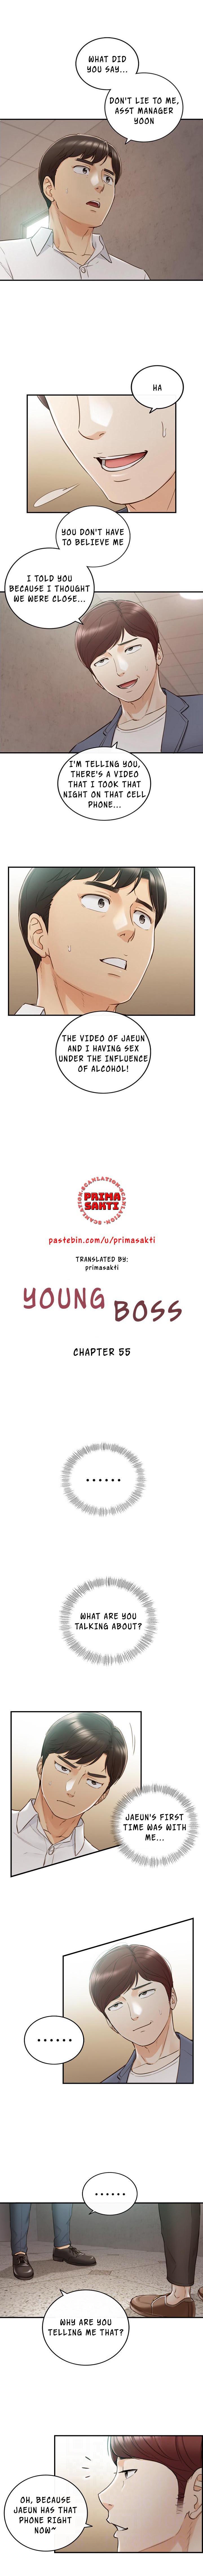 Young Boss Manhwa 01-73 433